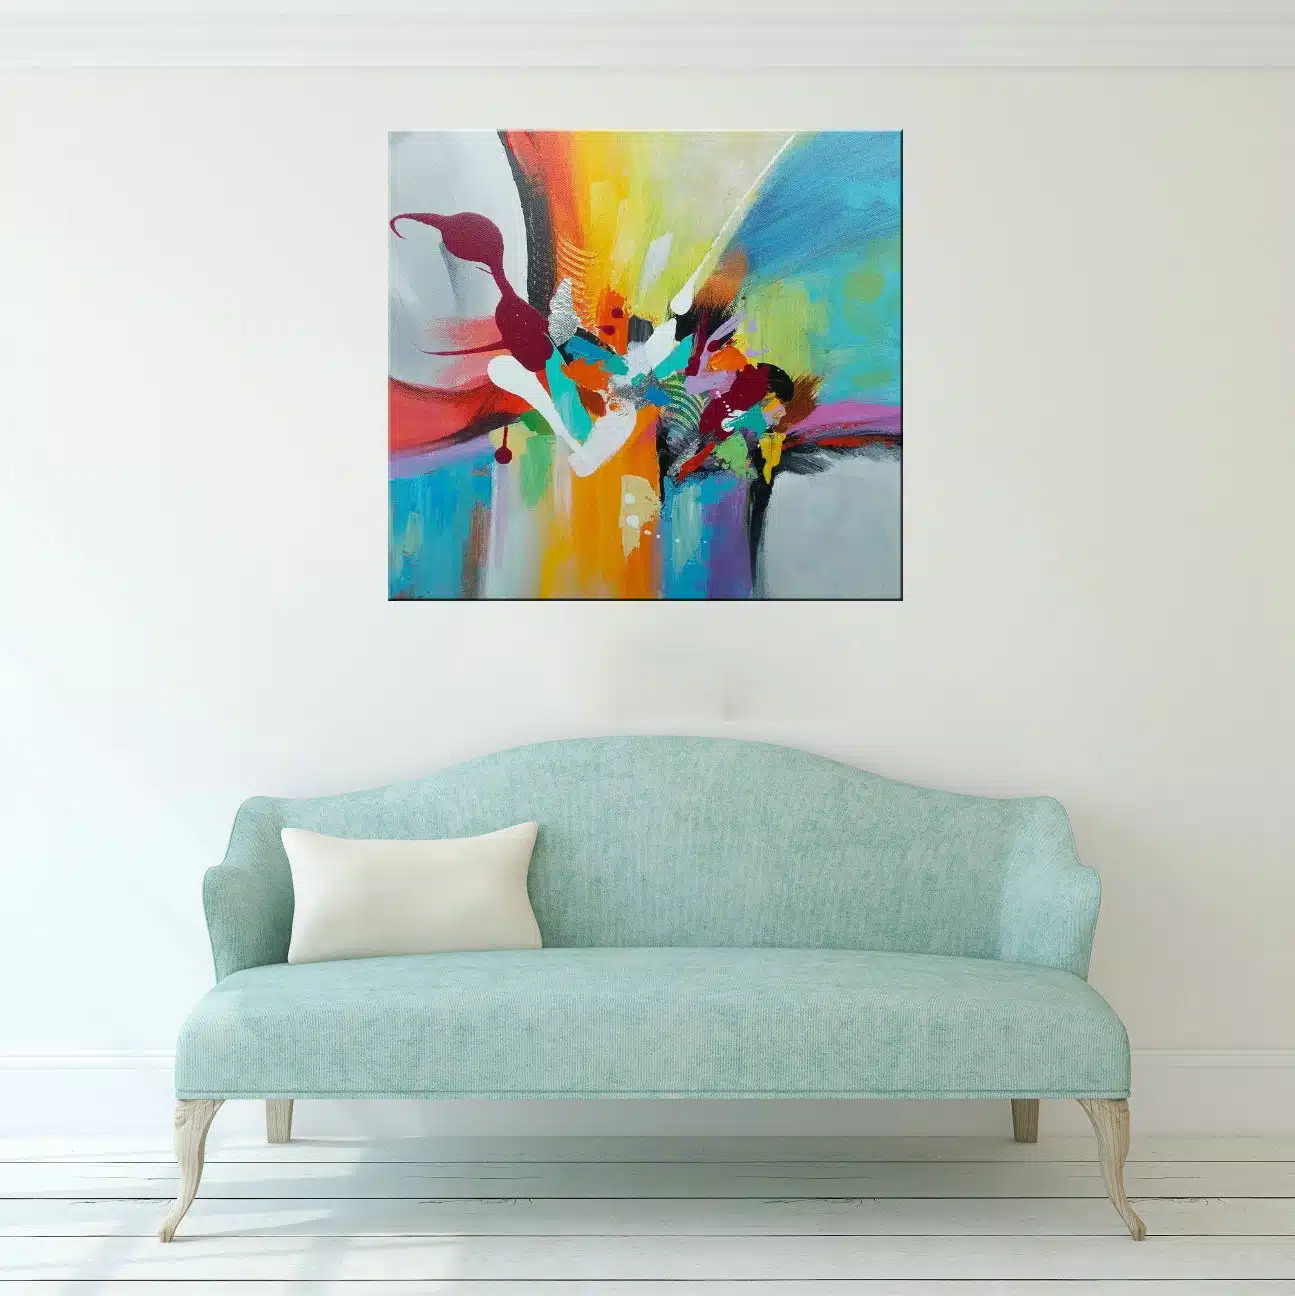 Tableau xxl abstrait bleu multicolore, peinture huile sur toile. Bonne qualité, confortable et à la mode accrochée sur un mur dans une chambre